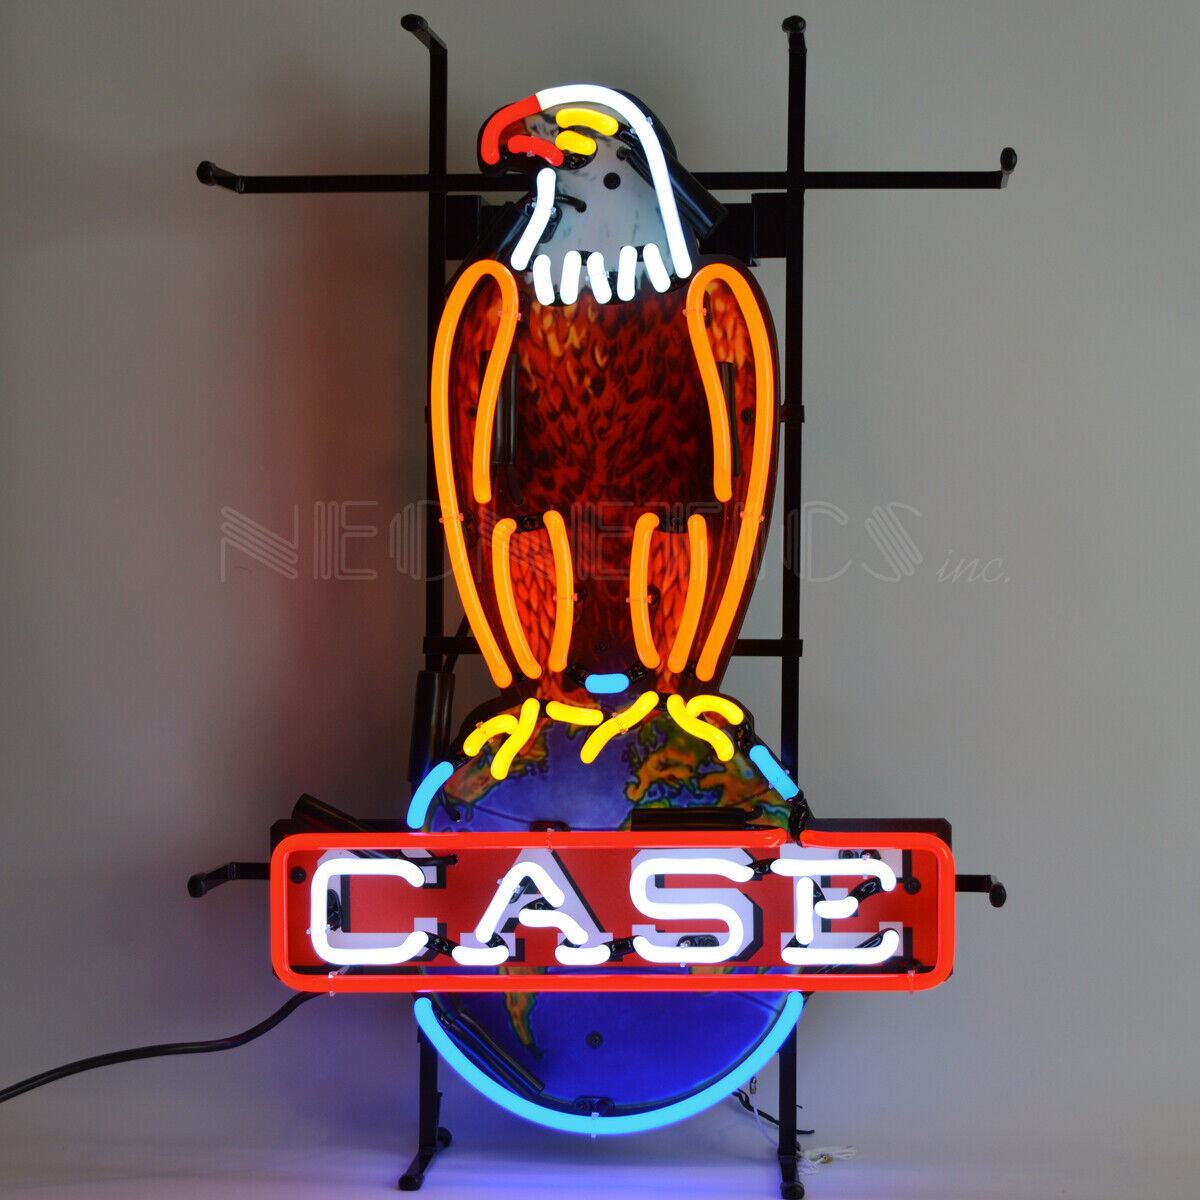 Man Cave Lamp CASE EAGLE INTERNATIONAL HARVESTER NEON SIGN